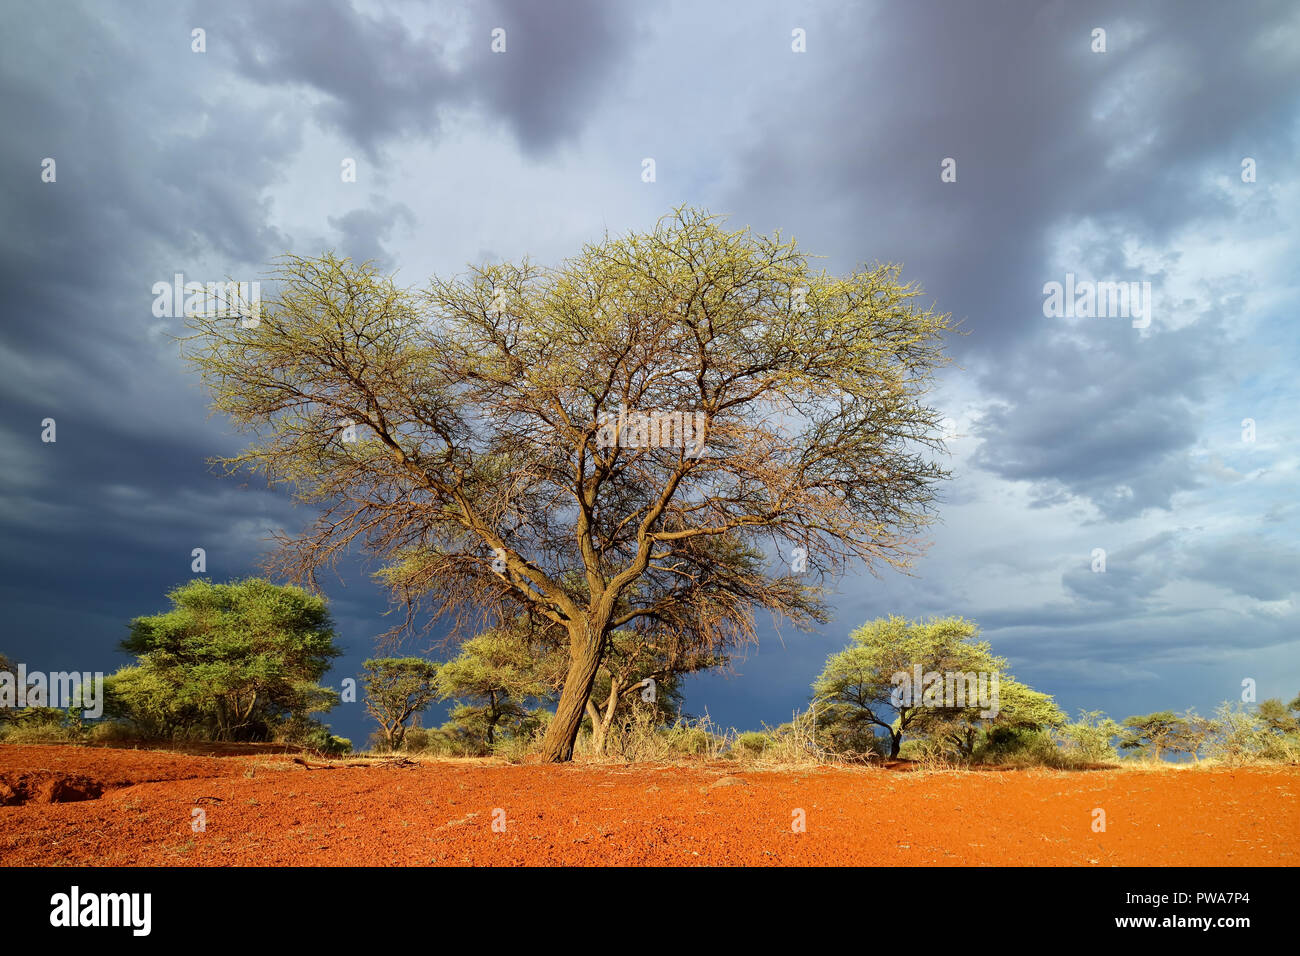 Afrikanische Savannenlandschaft gegen einen dunklen Himmel eines herannahenden Sturm, Südafrika Stockfoto